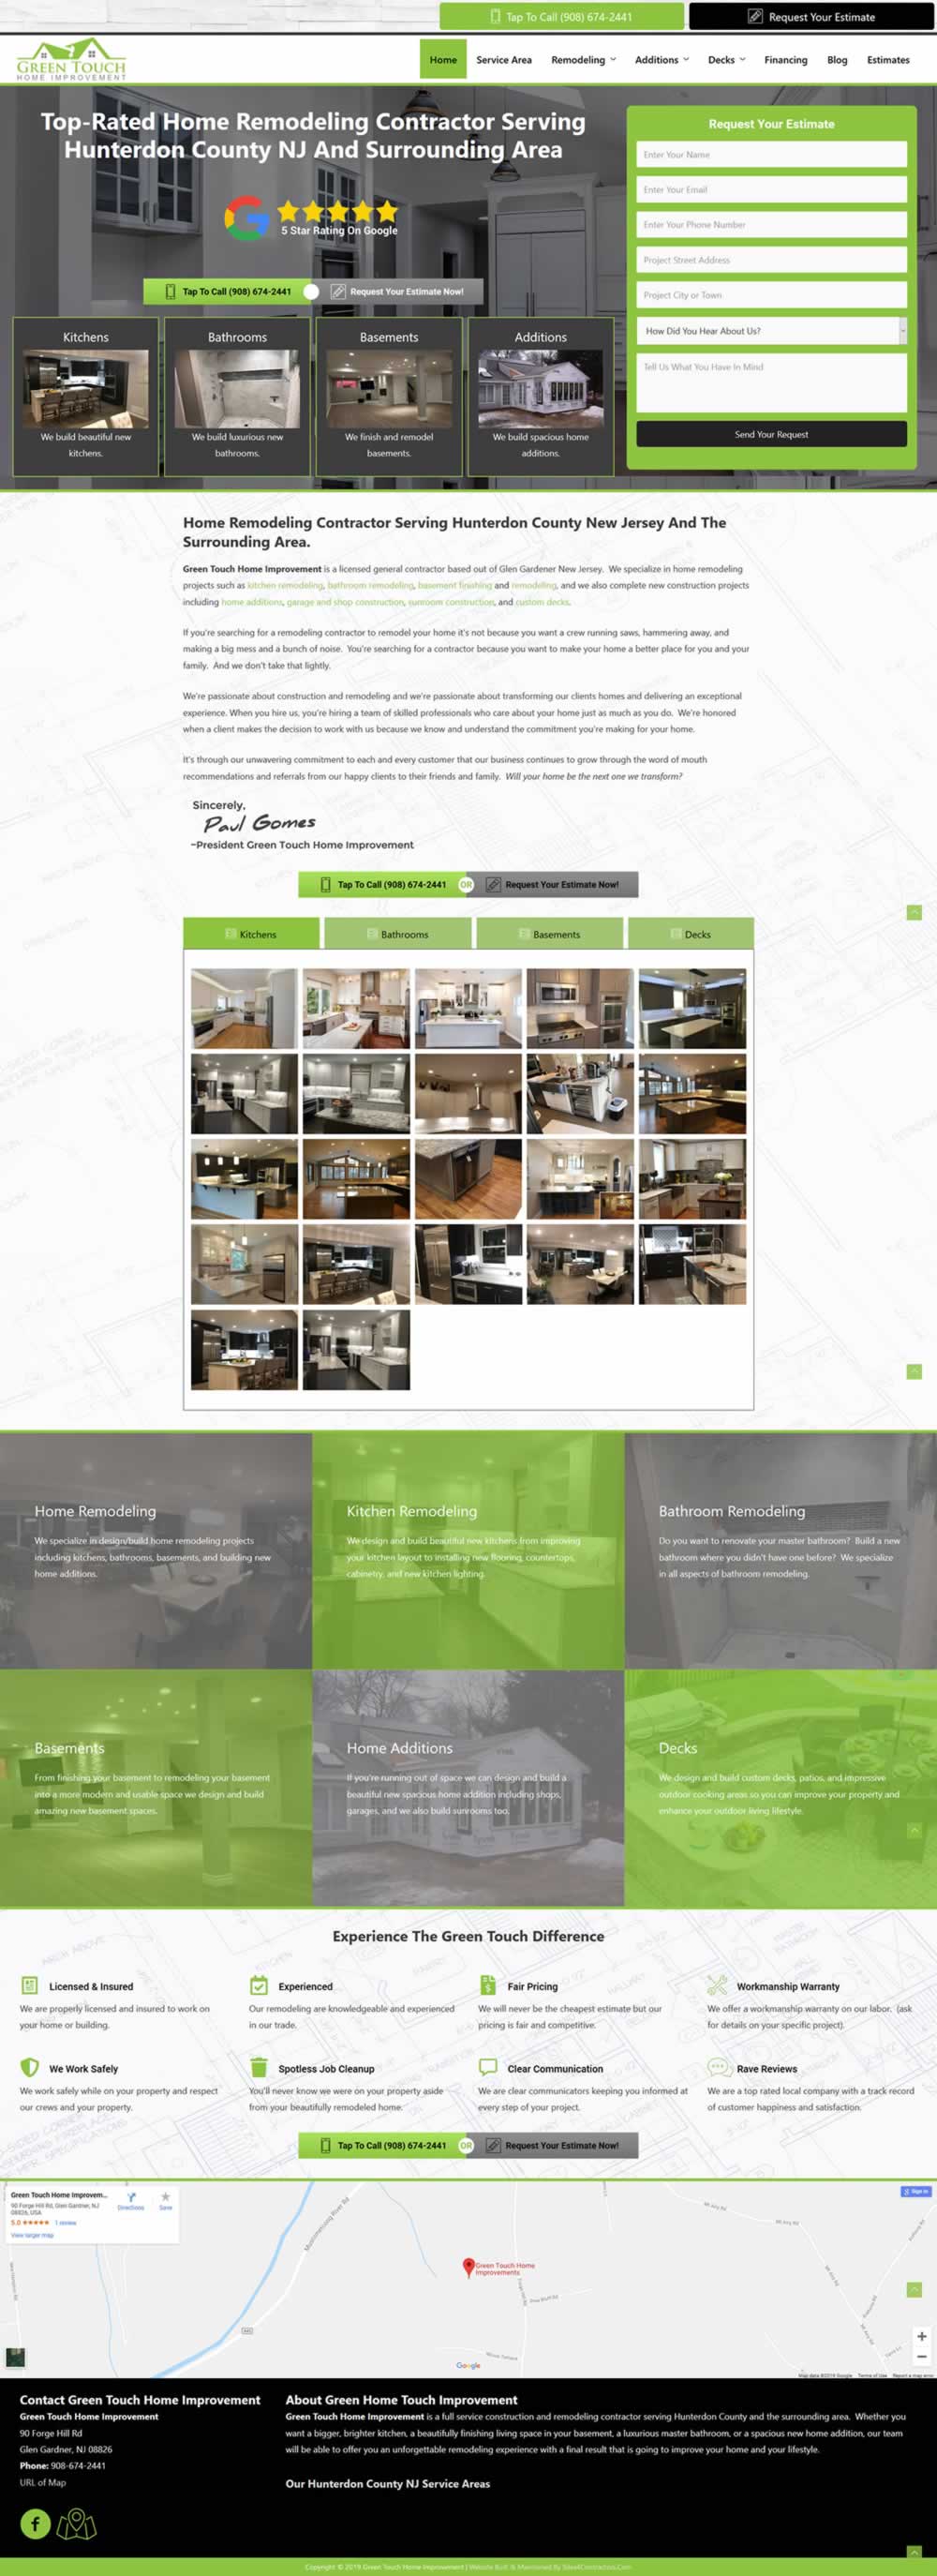 Remodeling Contractor Website Design